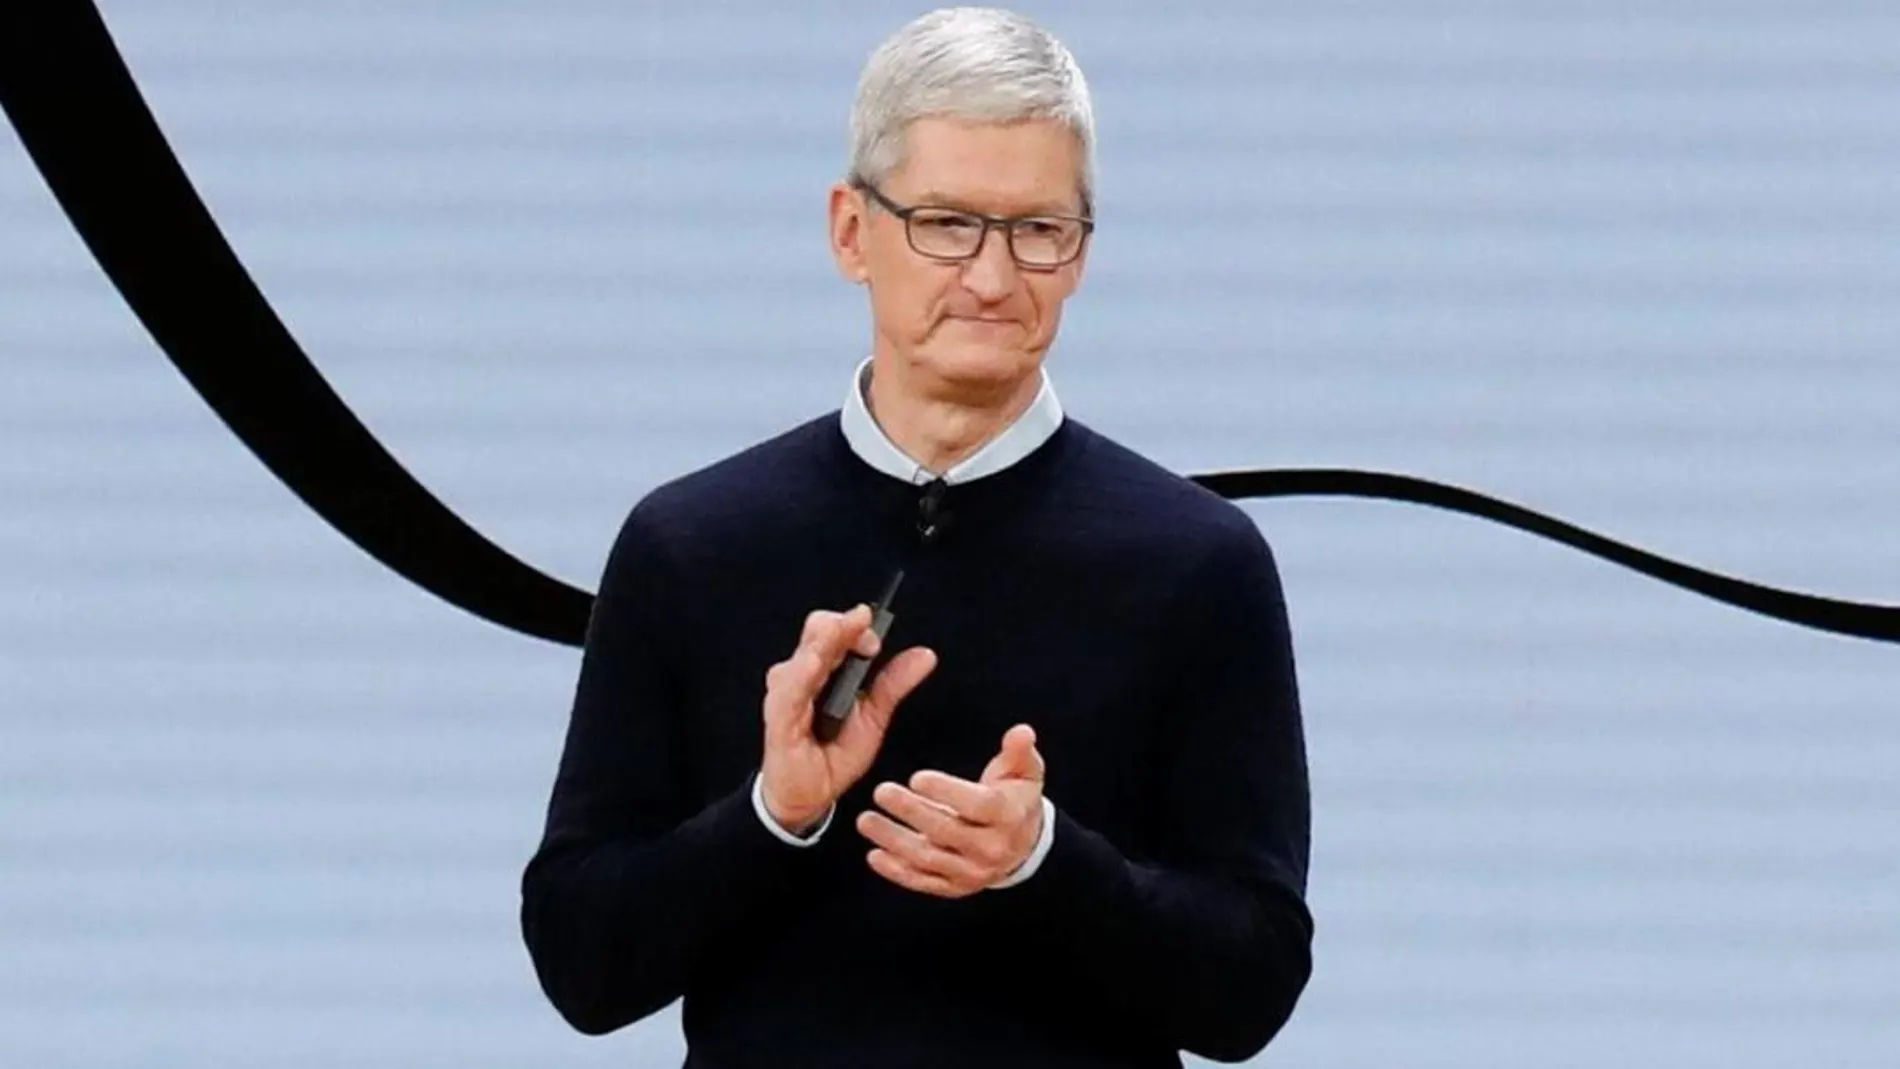 Tim Cook, CEO de Apple, en un acto este año en Chicago. REUTERS/John Gress